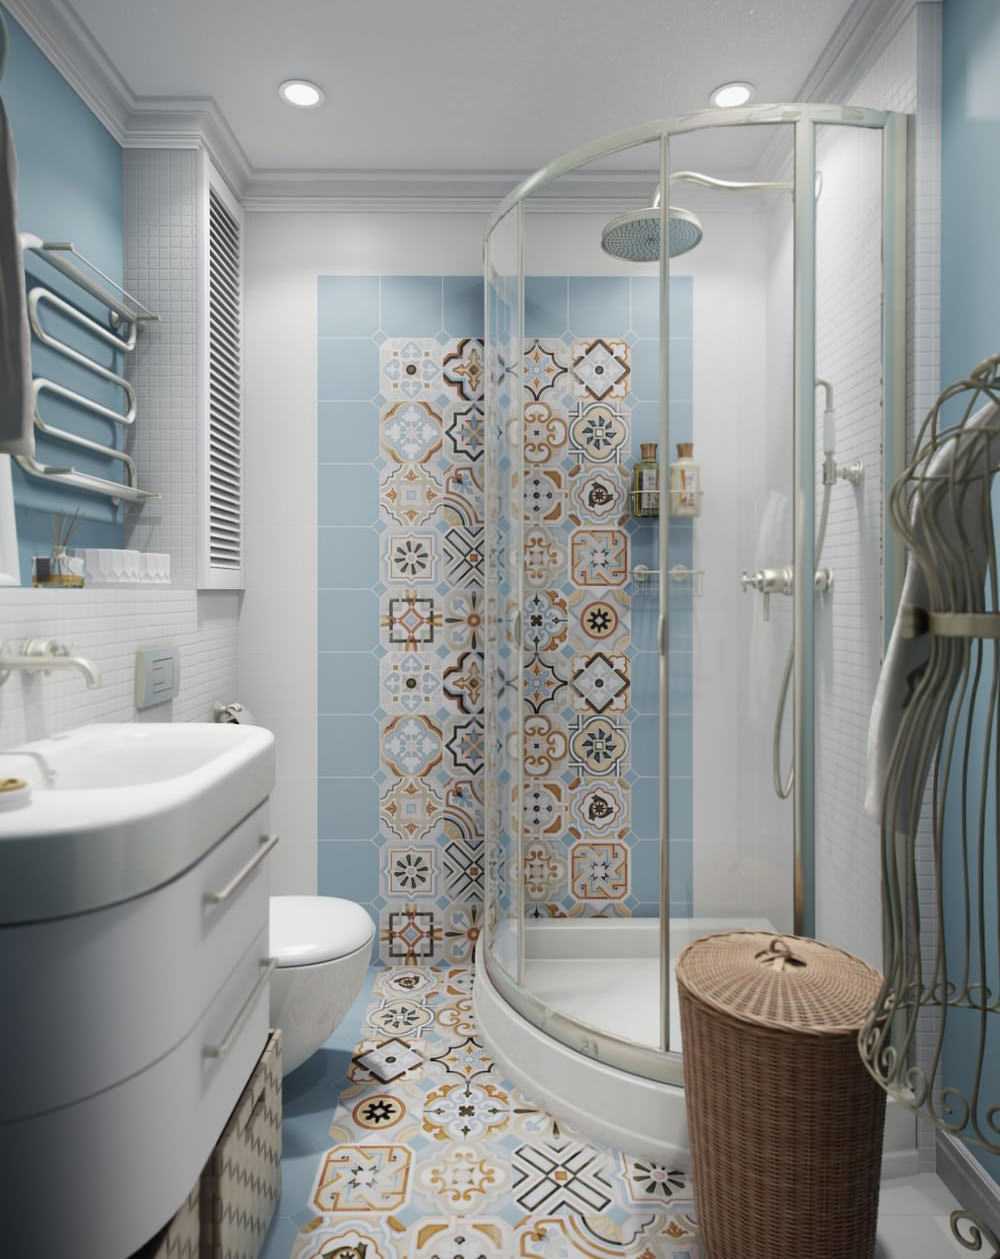 Планировка ванной комнаты совмещенной с туалетом [47 фото], расположение сантехники в совмещенном санузле для квартиры и частном дома, расположение душевой кабины